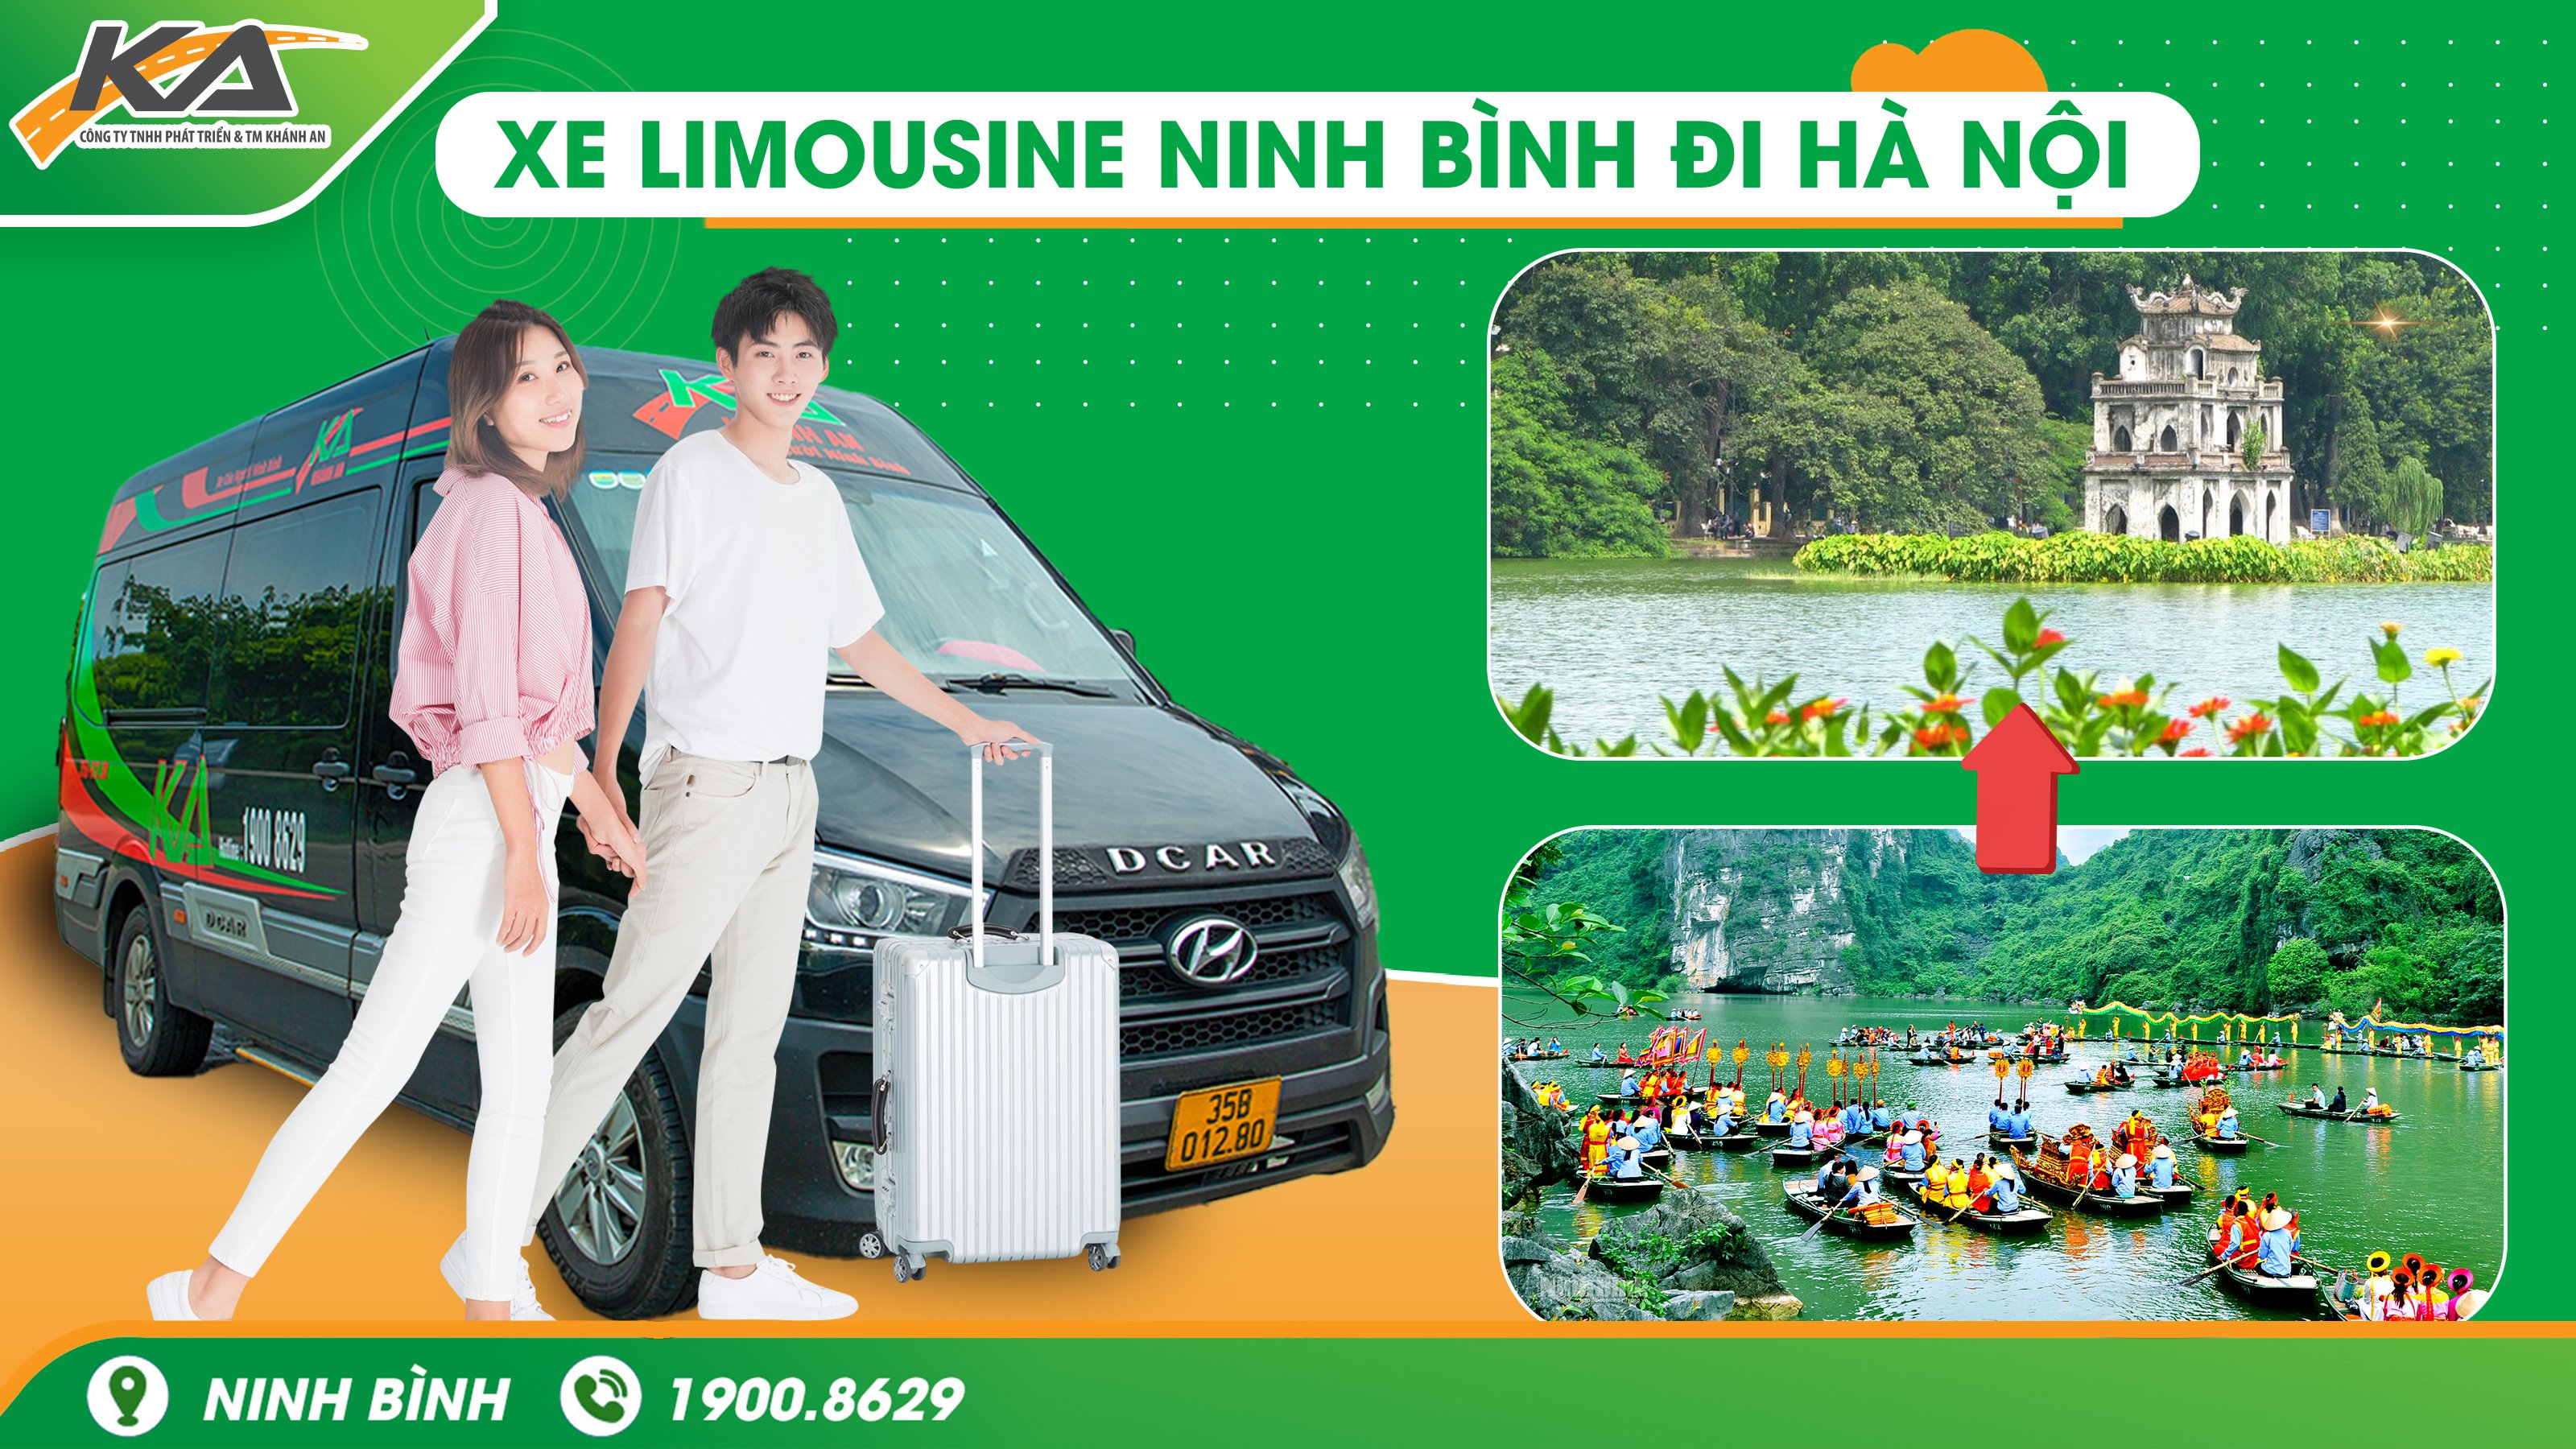 Ưu đãi cho sinh viên khi đặt xe Limousine Ninh Bình đi Hà Nội